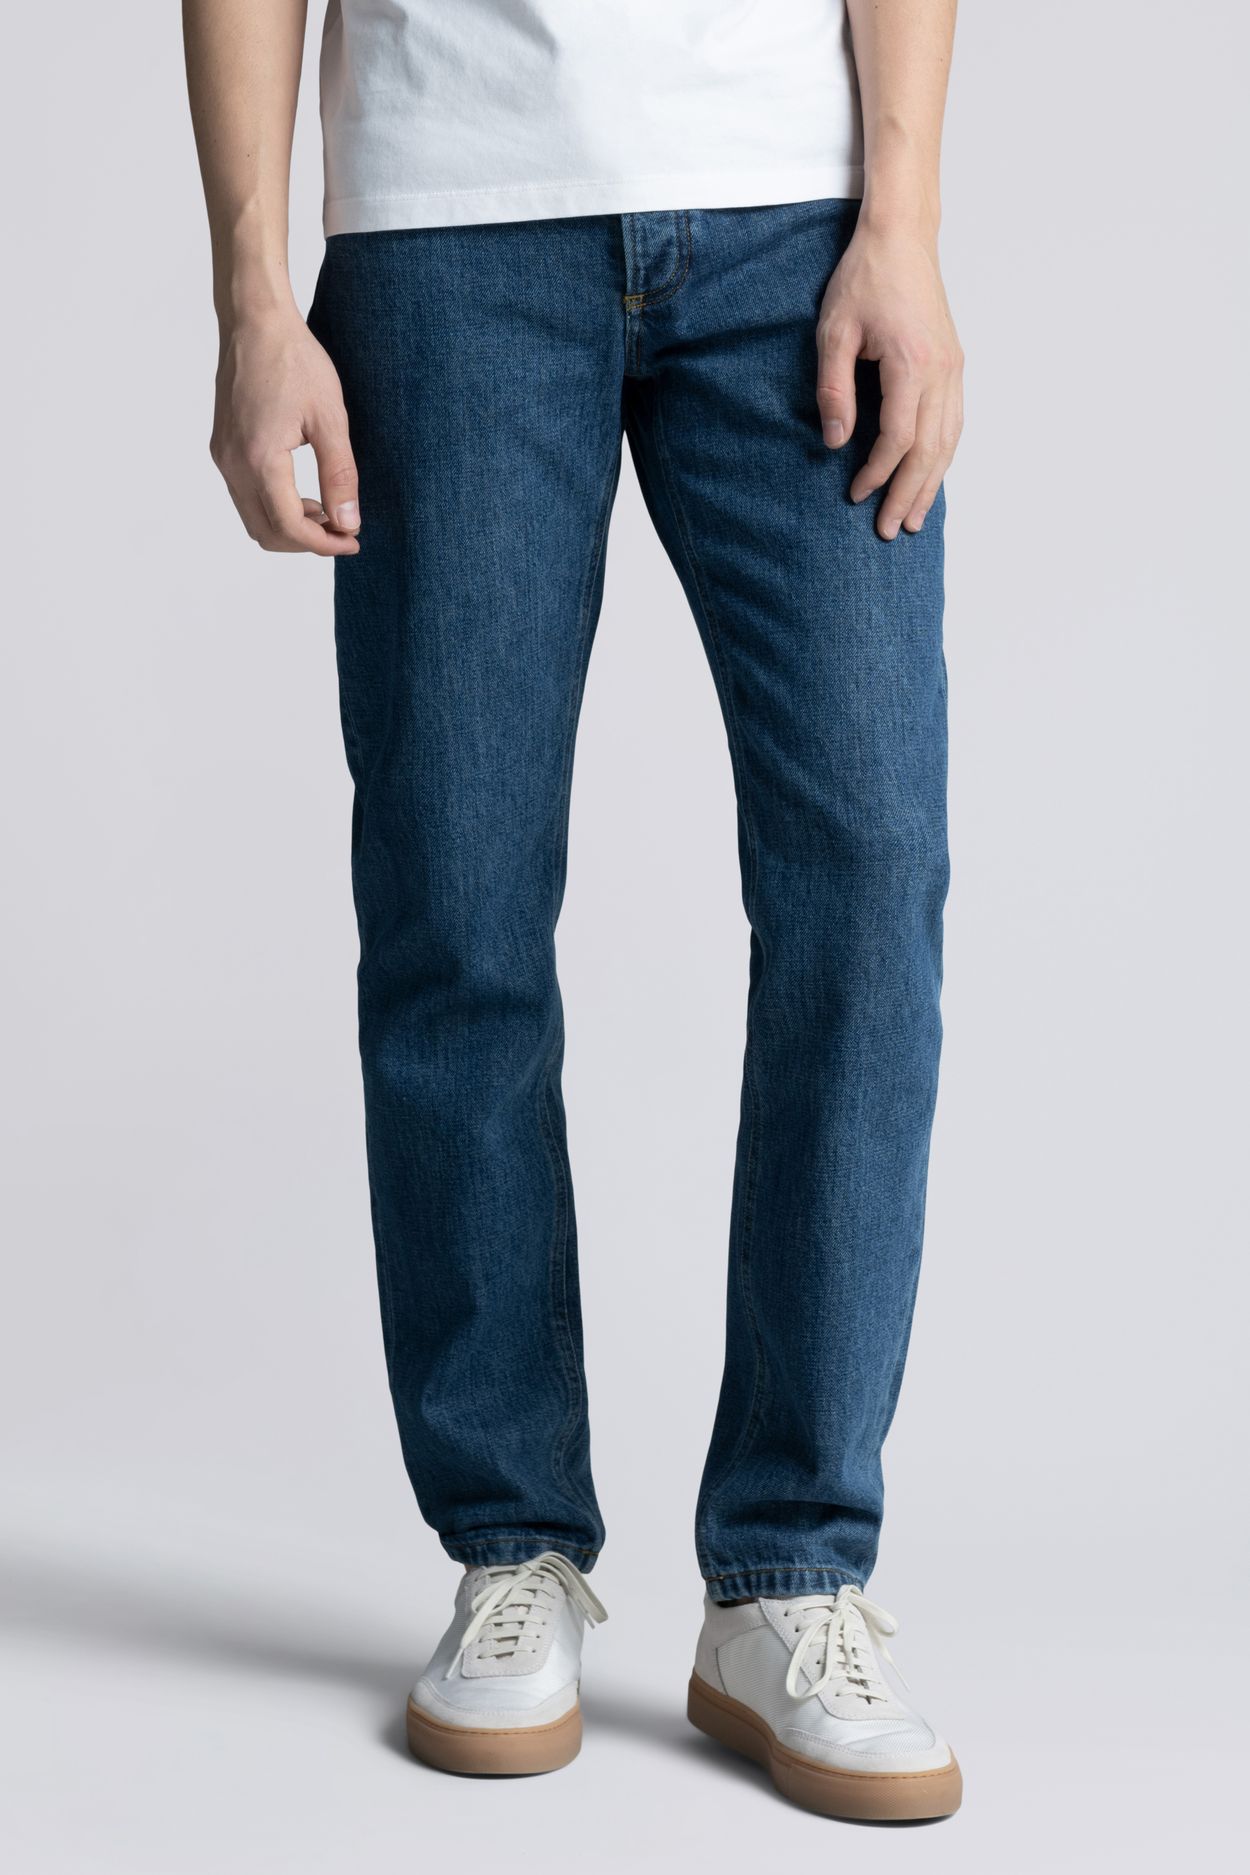 asket.com | The Washed Denim Jeans